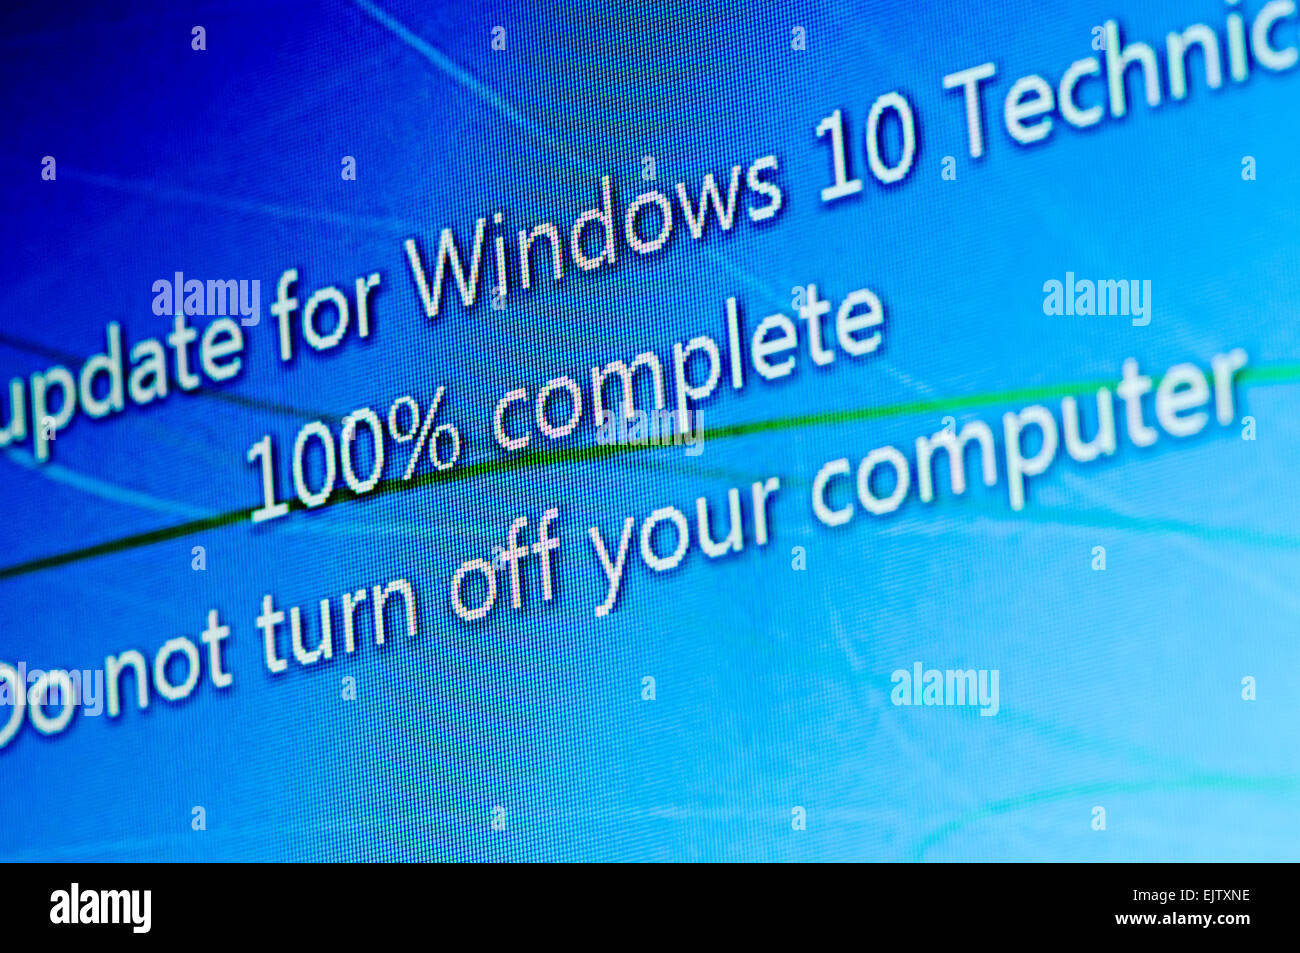 Instalar Windows 10 Technical Preview, una versión beta pública. Foto de stock